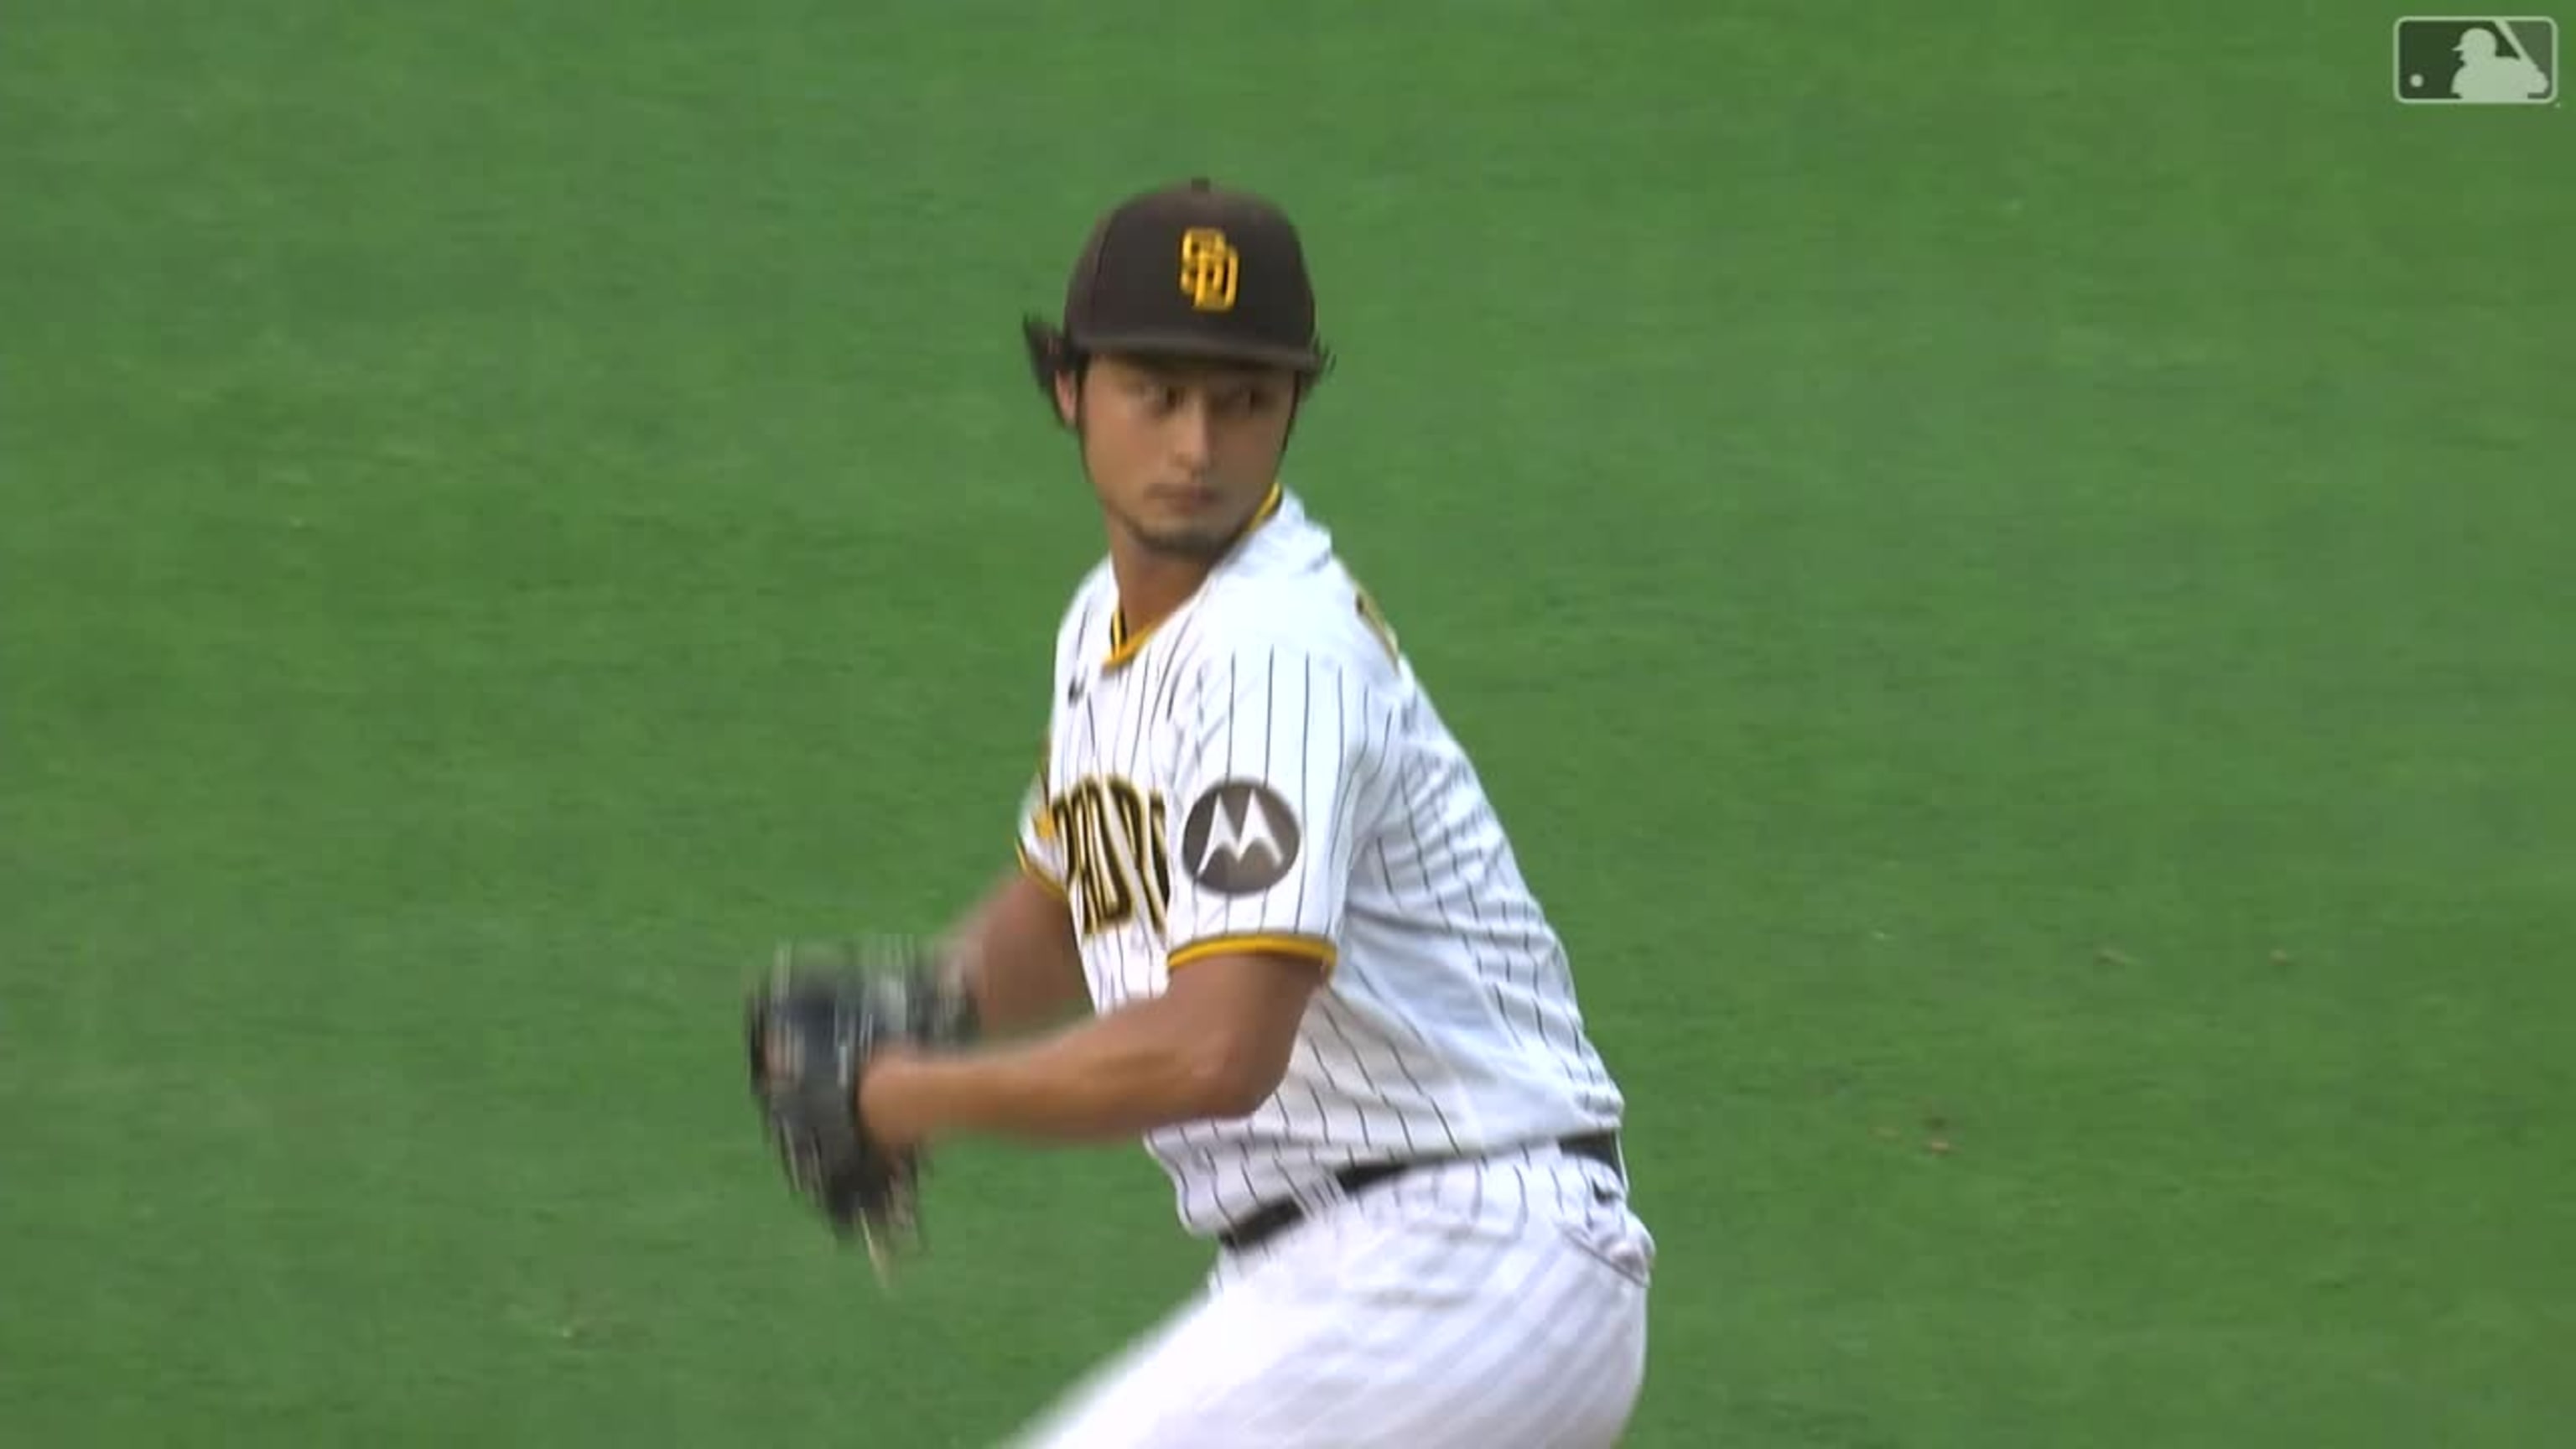 Yu Darvish injury: What happened to Yu Darvish? Padres star